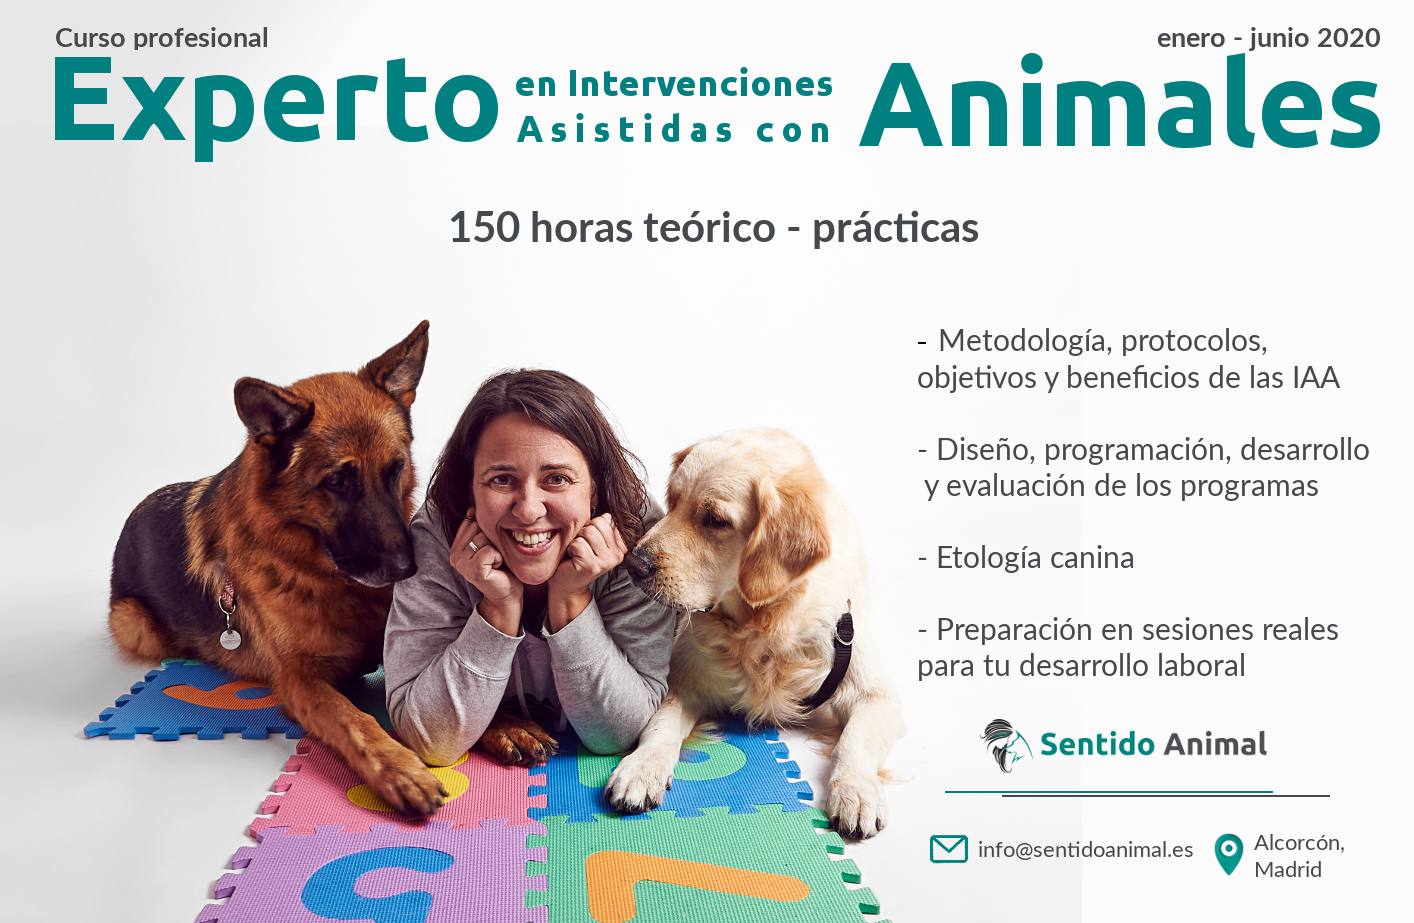 Curso extensivo de experto en intervenciones asistidas con animales – Madrid 2020